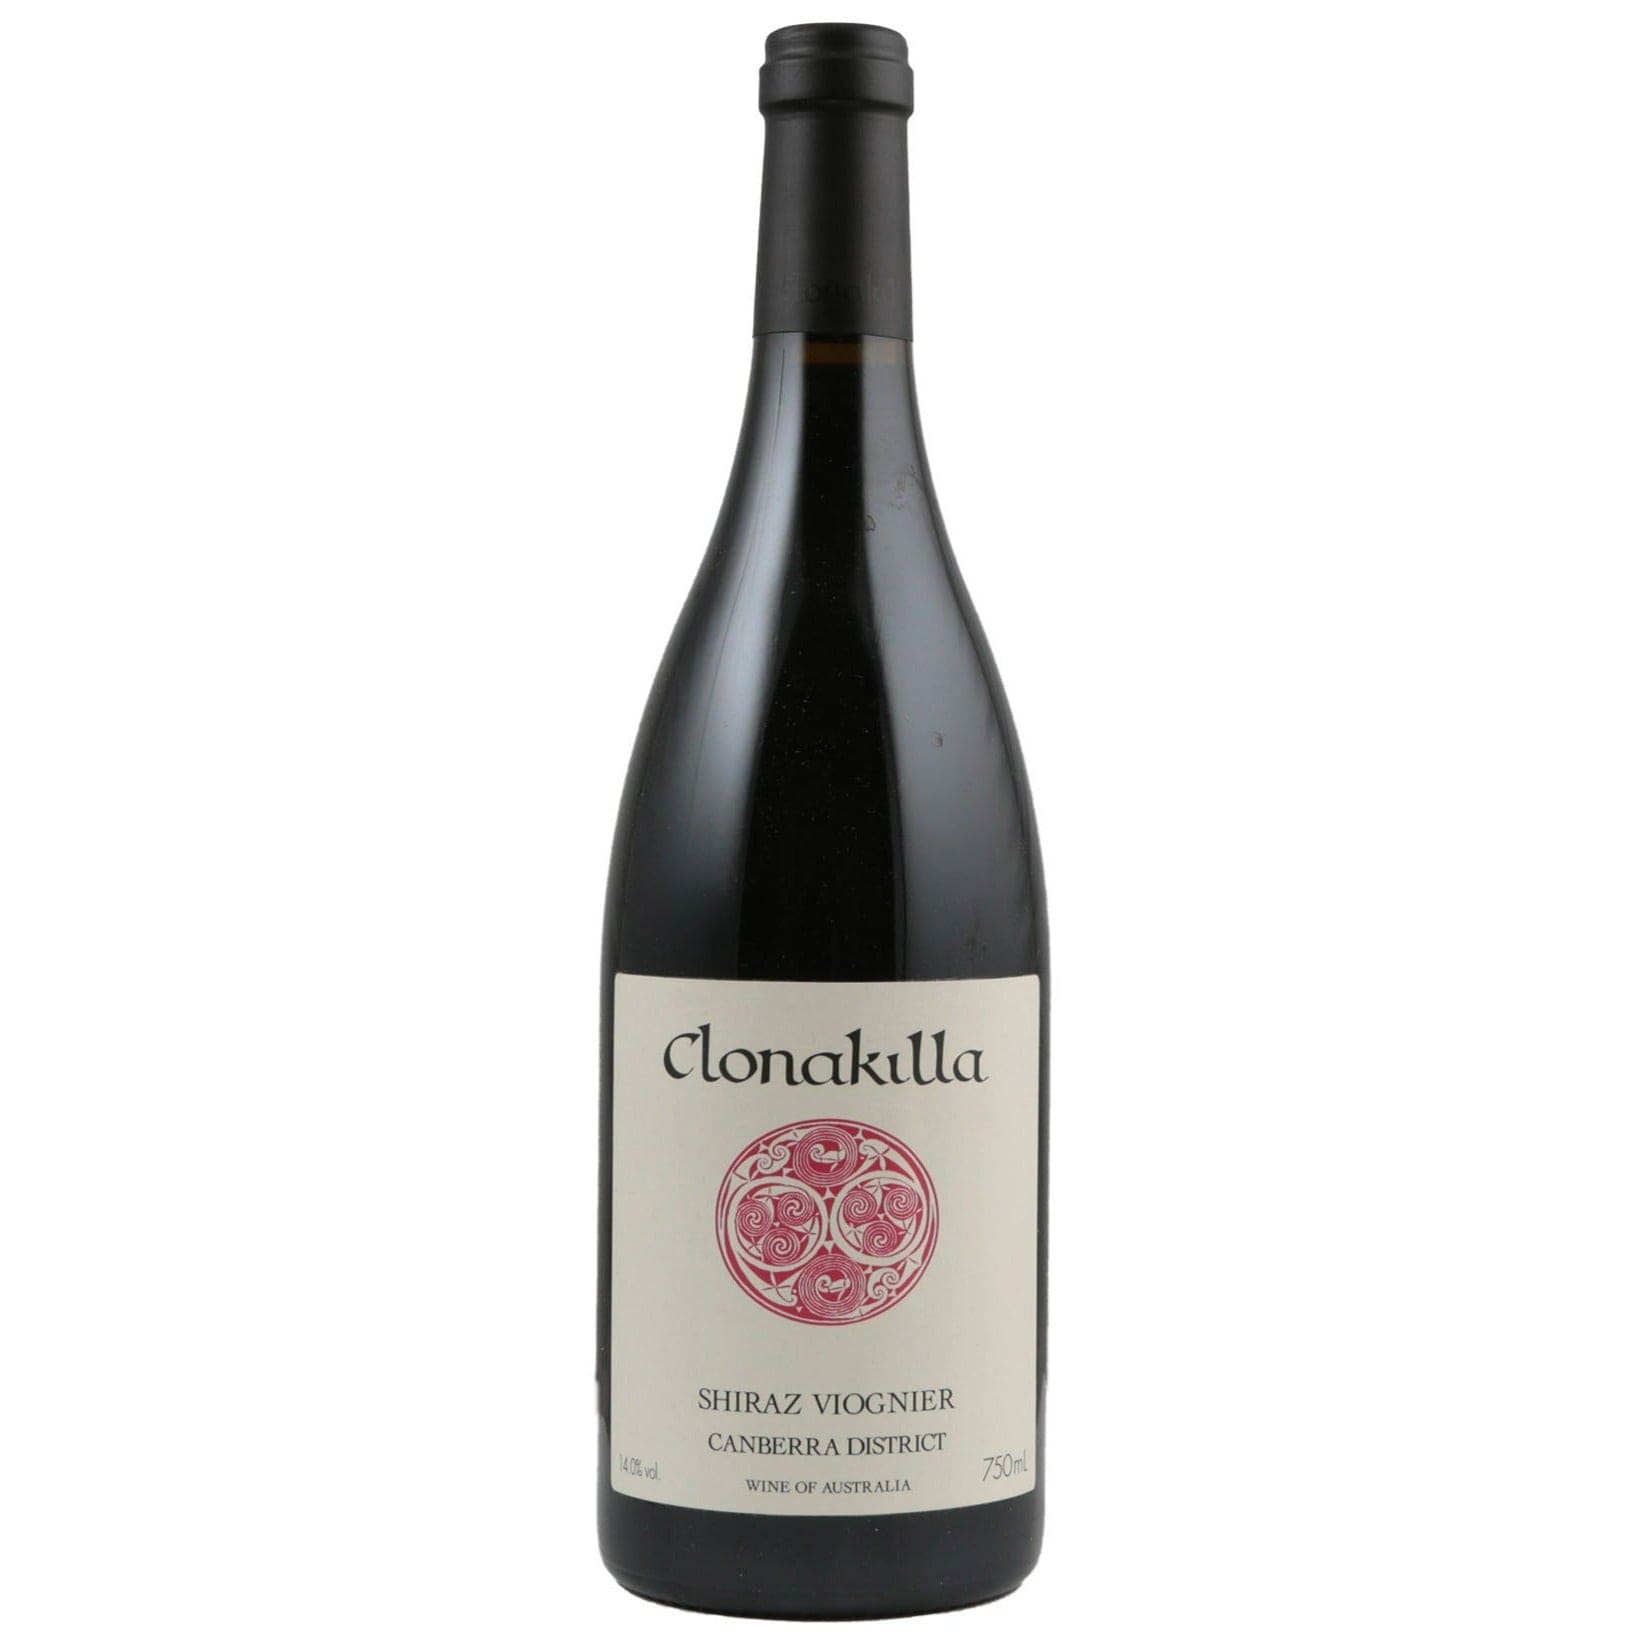 Single bottle of Red wine Clonakilla, Shiraz-Viognier Canberra District, 2009 95% Shiraz, 5% Viognier